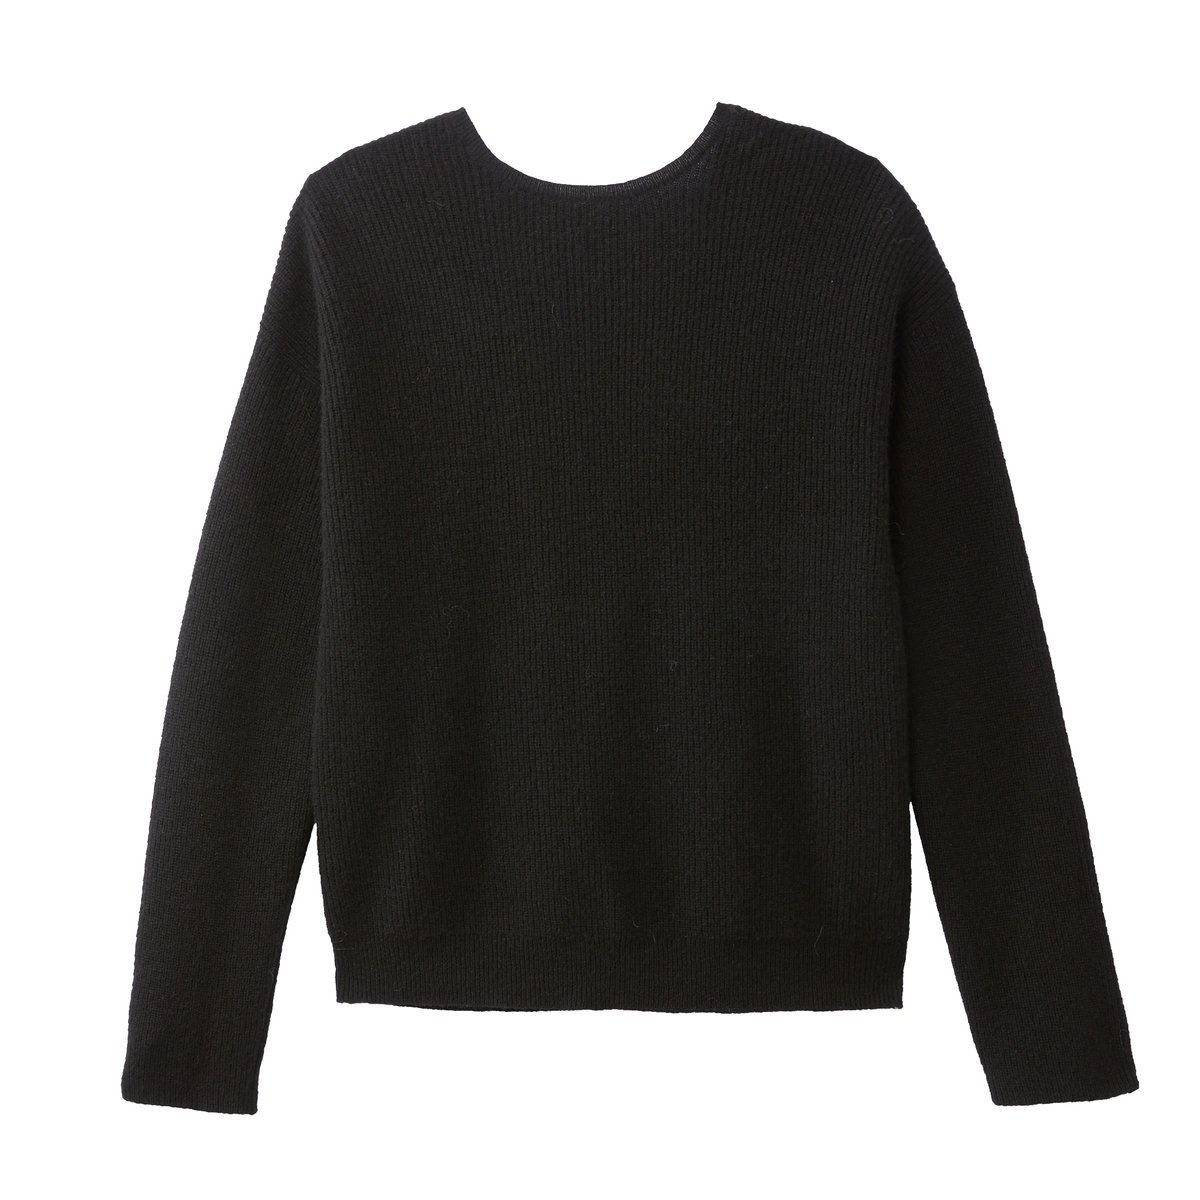 Пуловер La Redoute С V-образным вырезом сзади или спереди из кашемира L черный, размер L - фото 5